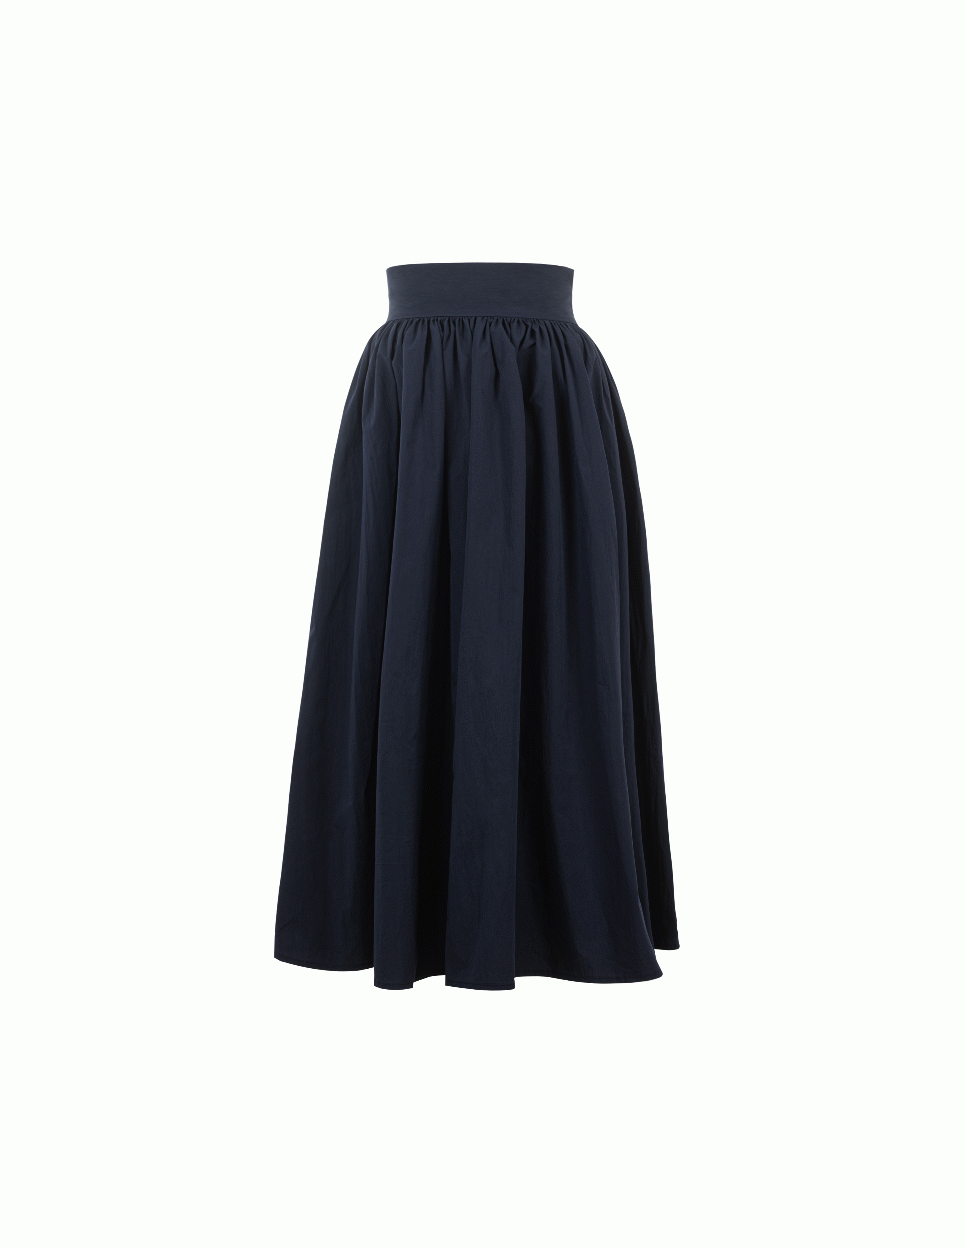 FE22SS Paper Skirt